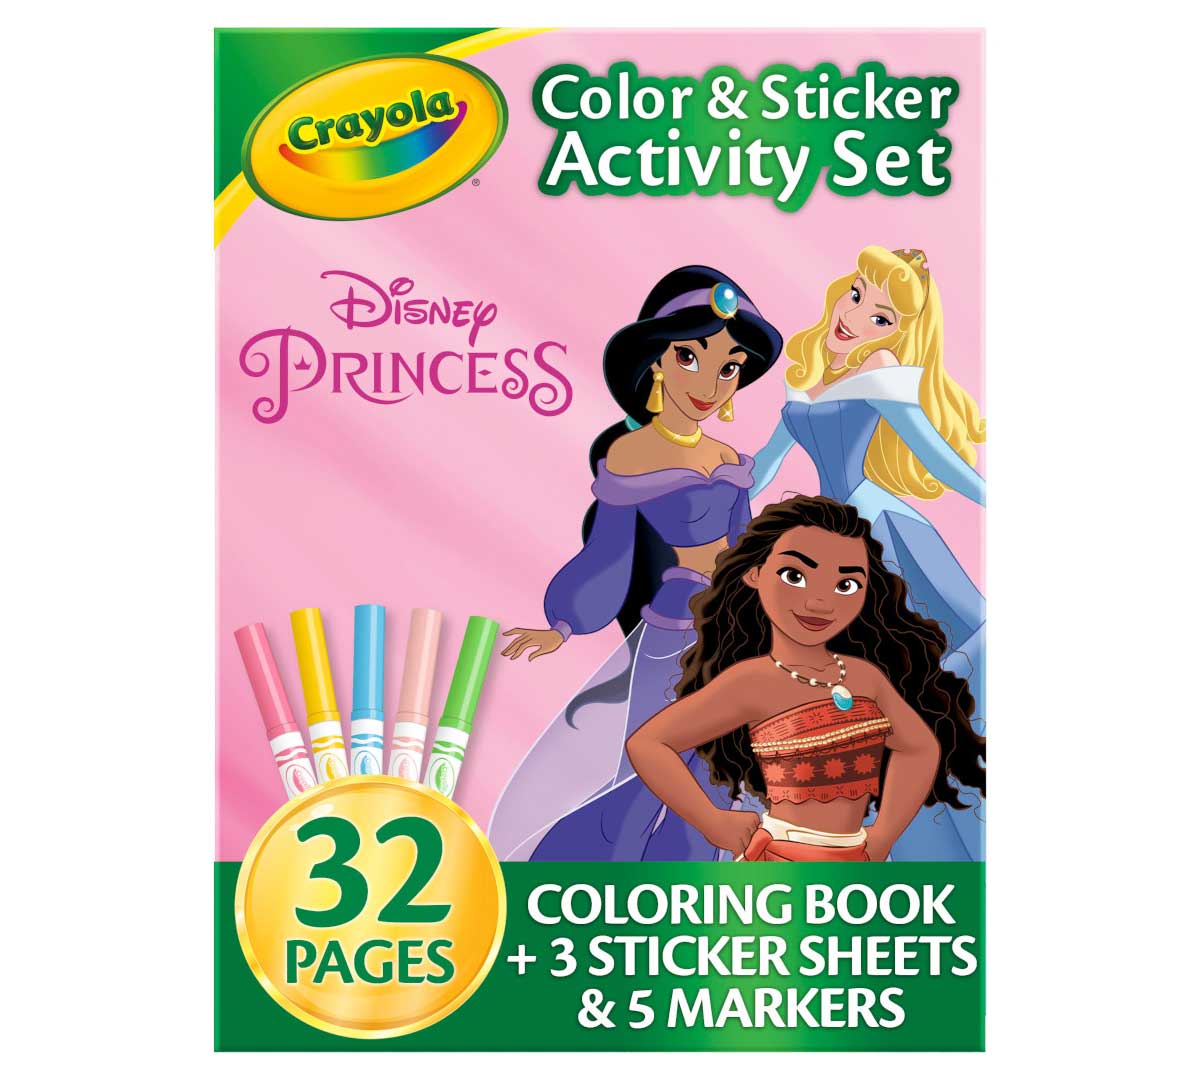 https://shop.crayola.com/on/demandware.static/-/Sites-crayola-storefront/default/dw8300ebbd/images/04-2745_Color-&-Sticker-Activity-Foldalope_Princess_PDP_01.jpg